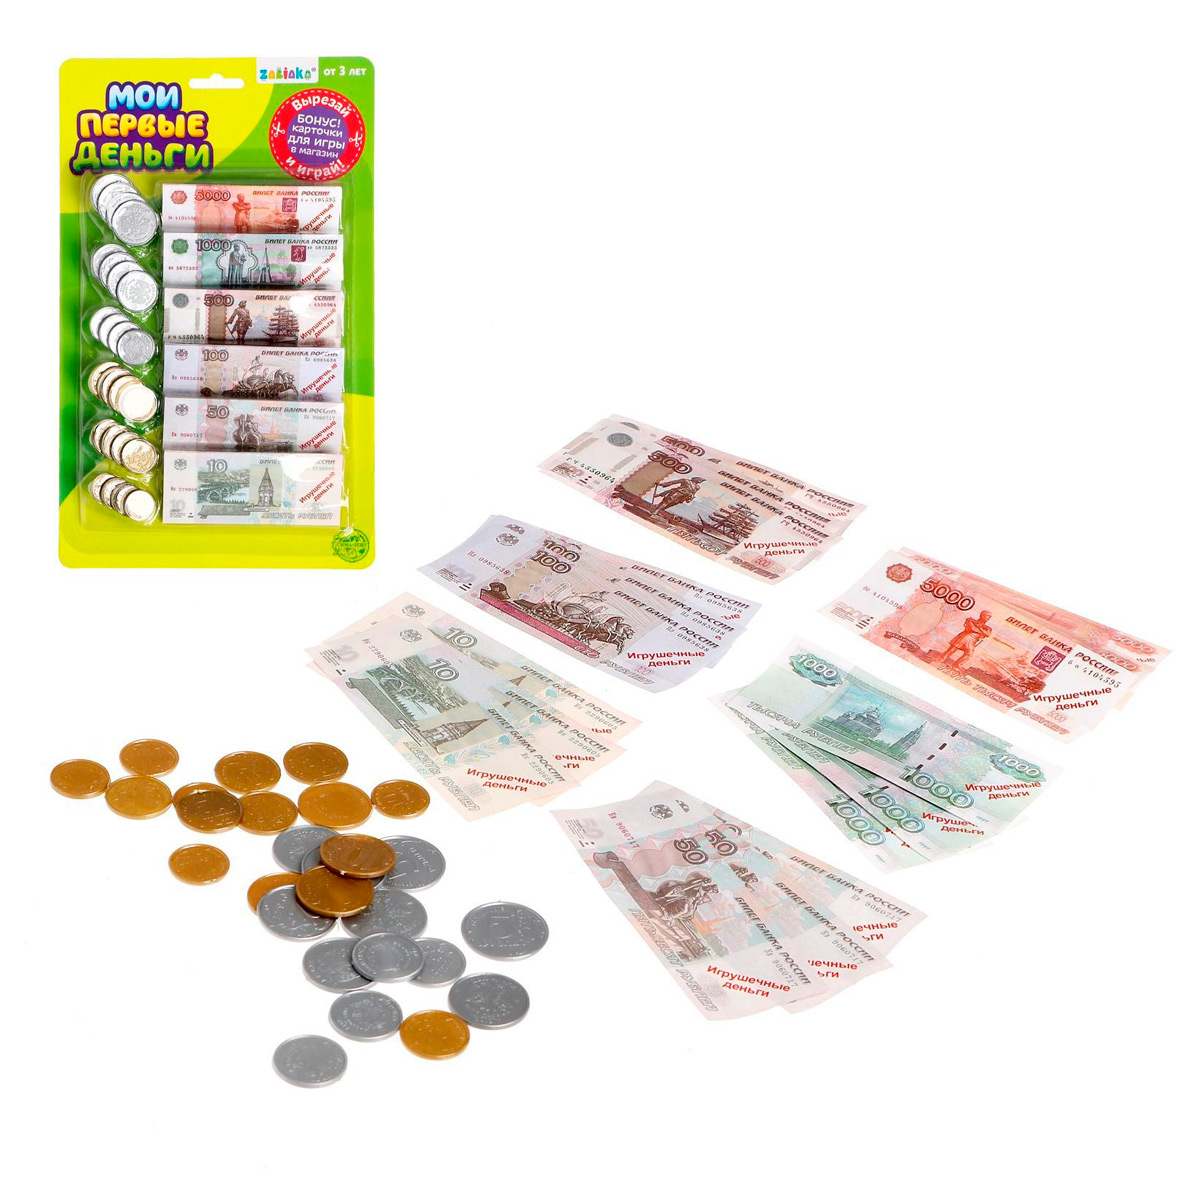 Игровой набор "Мои первые деньги", 18 купюр, 24 монеты